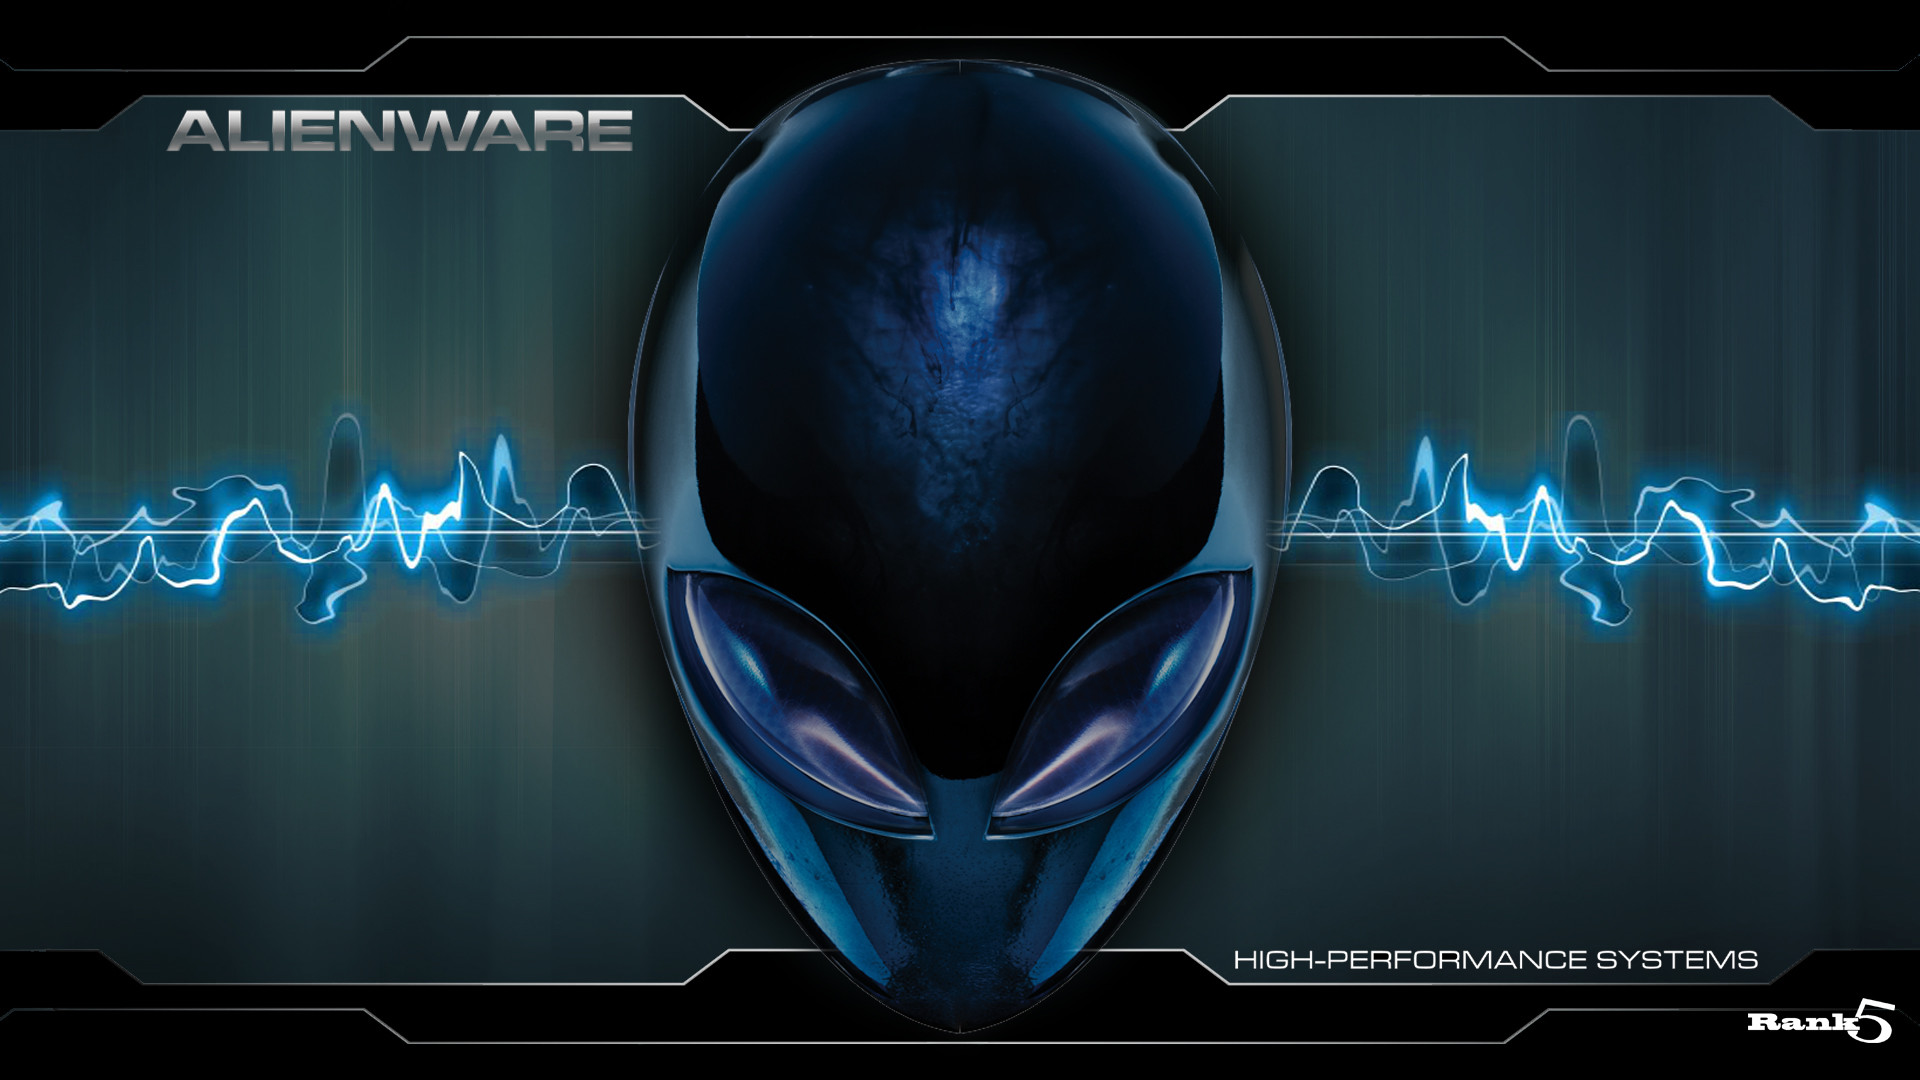 Alienware Wallpaper HD (78+ pictures)